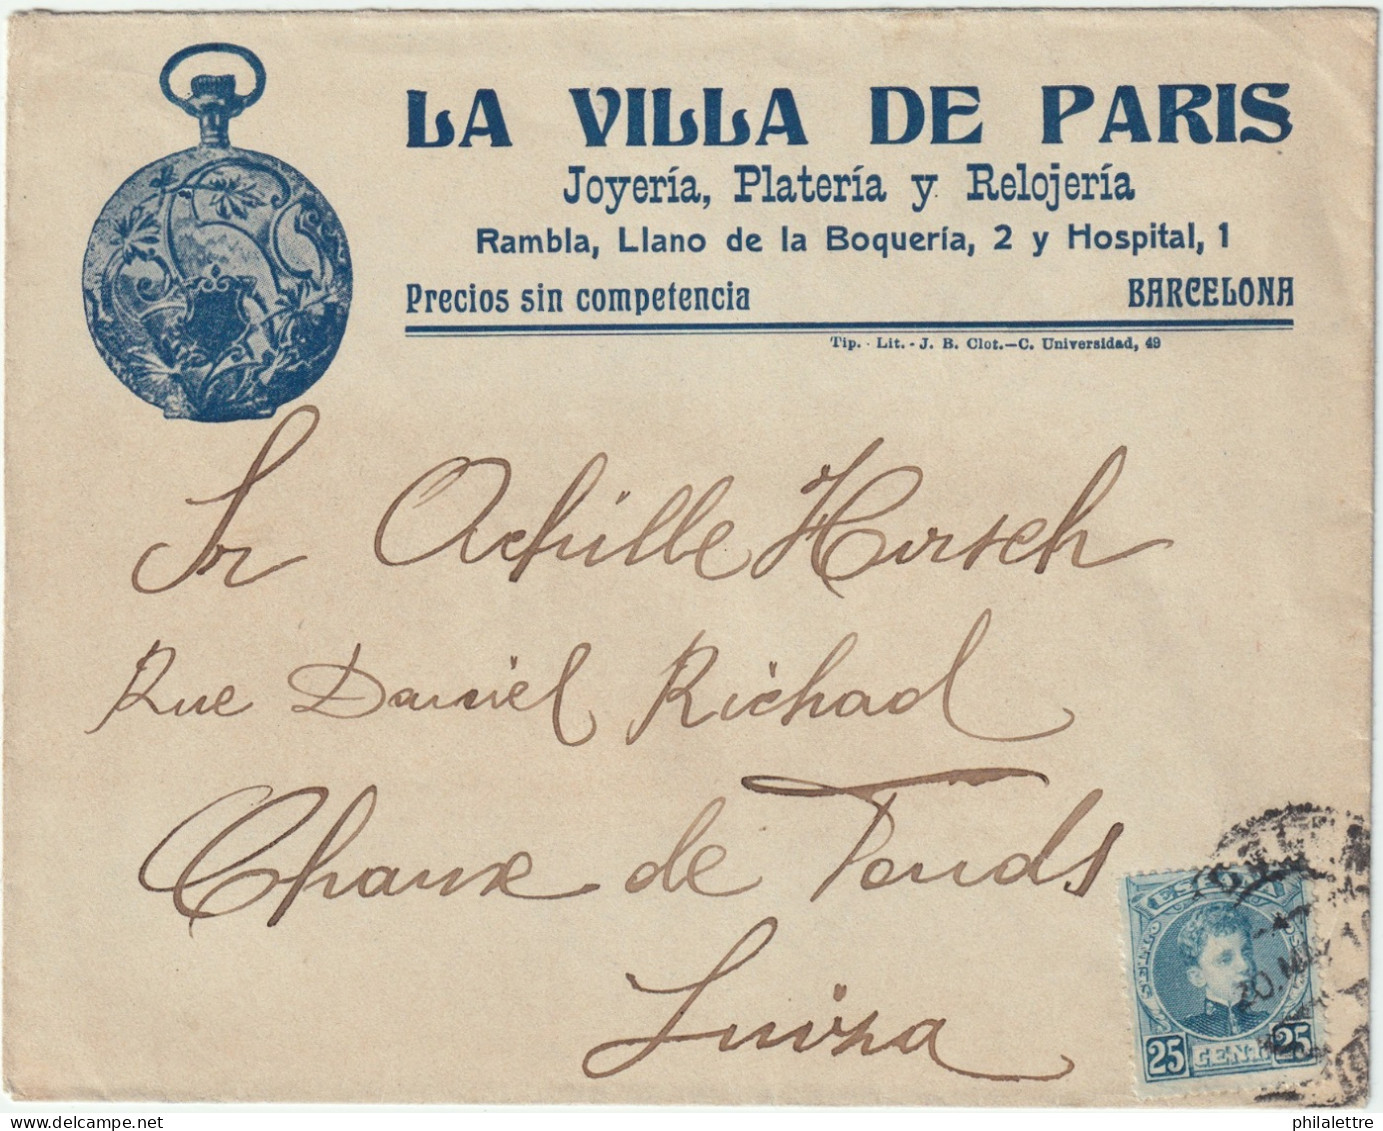 ESPAGNE/ESPAÑA 1910 Ed.248 En Sobre Con Membrete “LA VILLA DE PARIS" Ilustrado (reloj) De Barcelona à Suiza - Covers & Documents